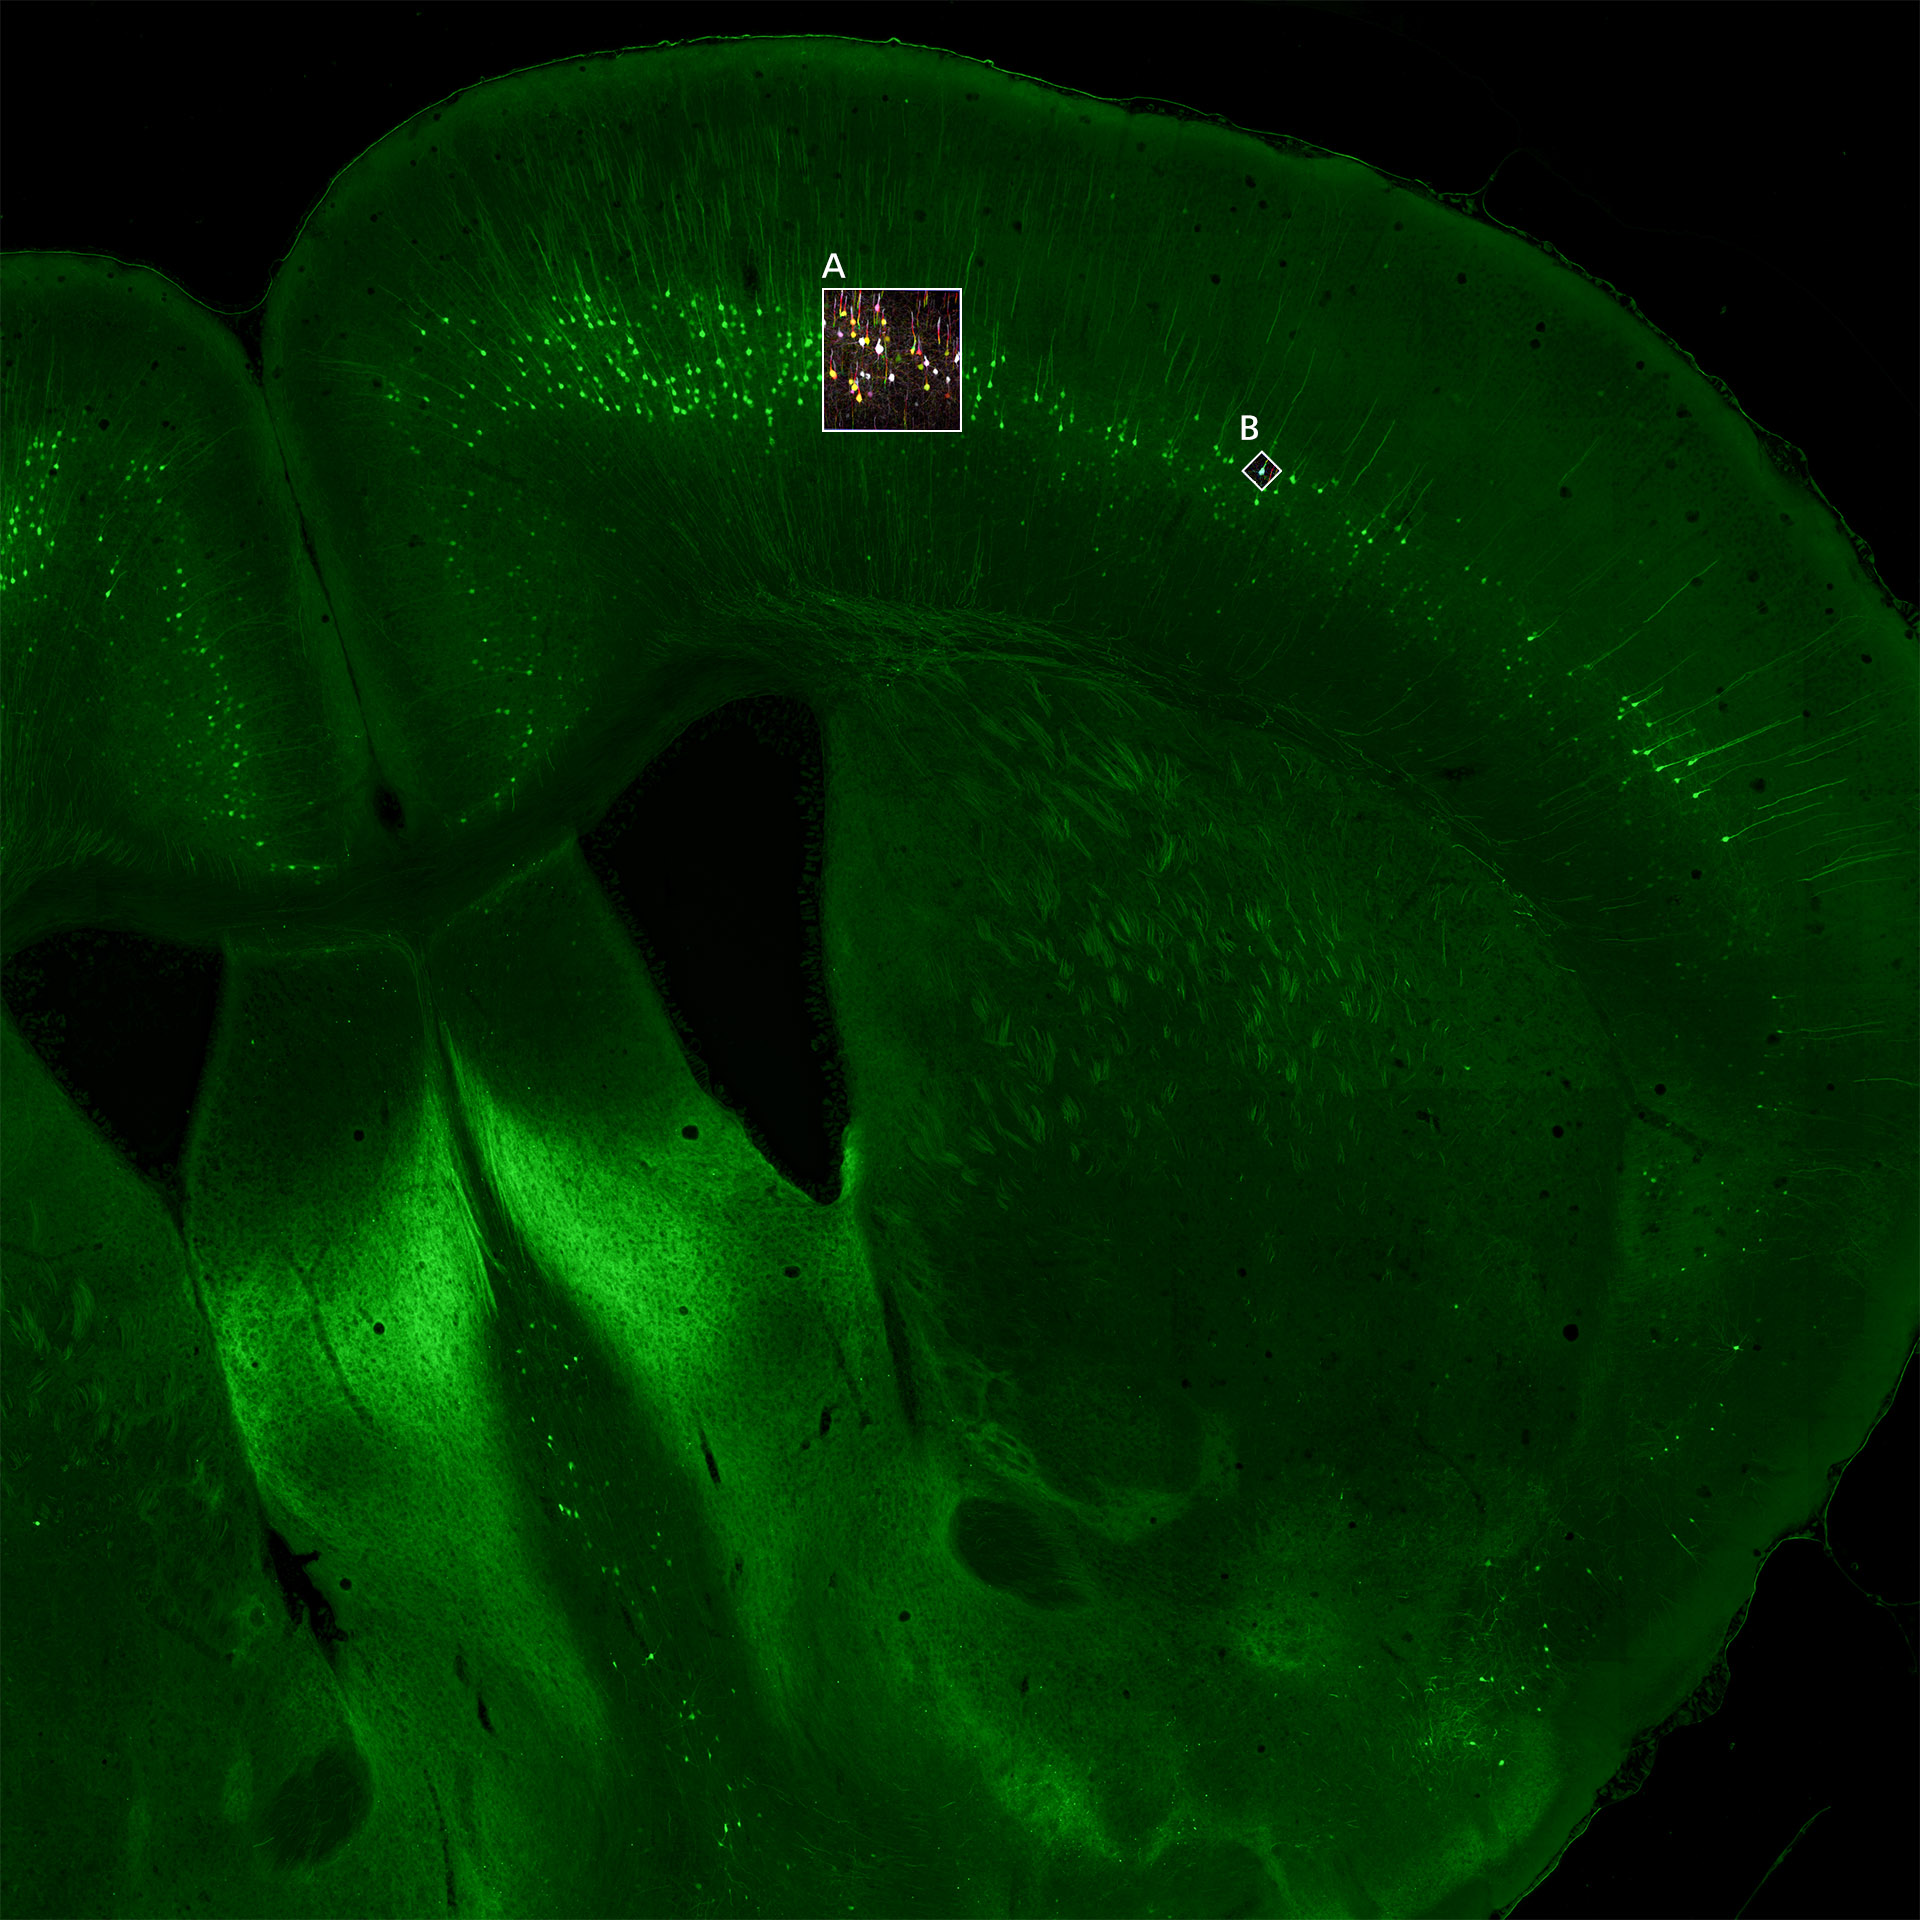 デジタルスライドスキャナーで取得したマウス脳切片のオーバービュー画像。